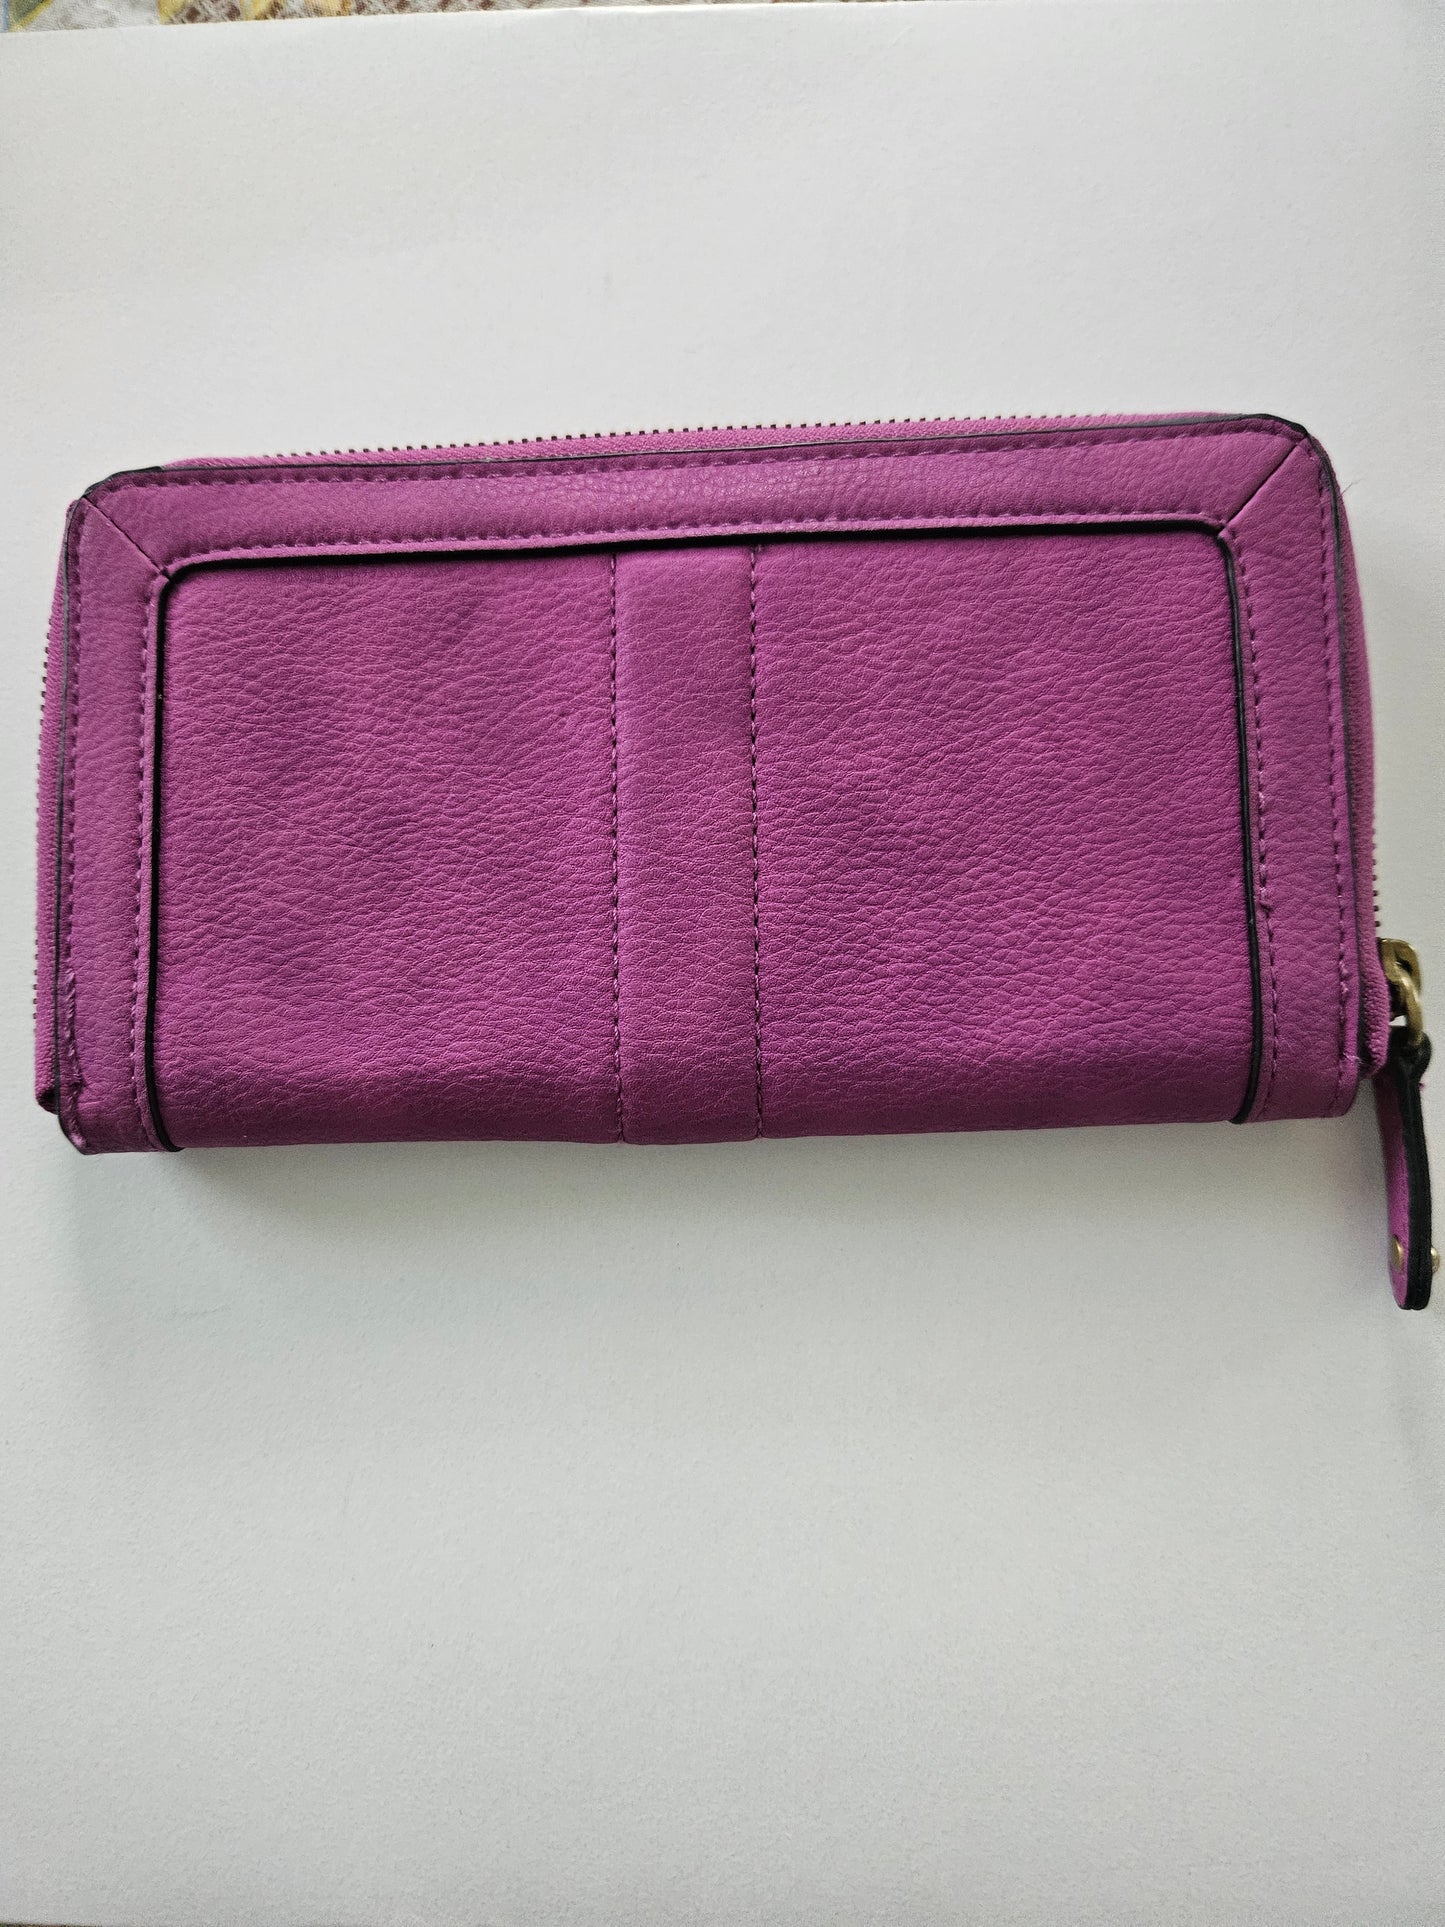 Pretty purple wallet